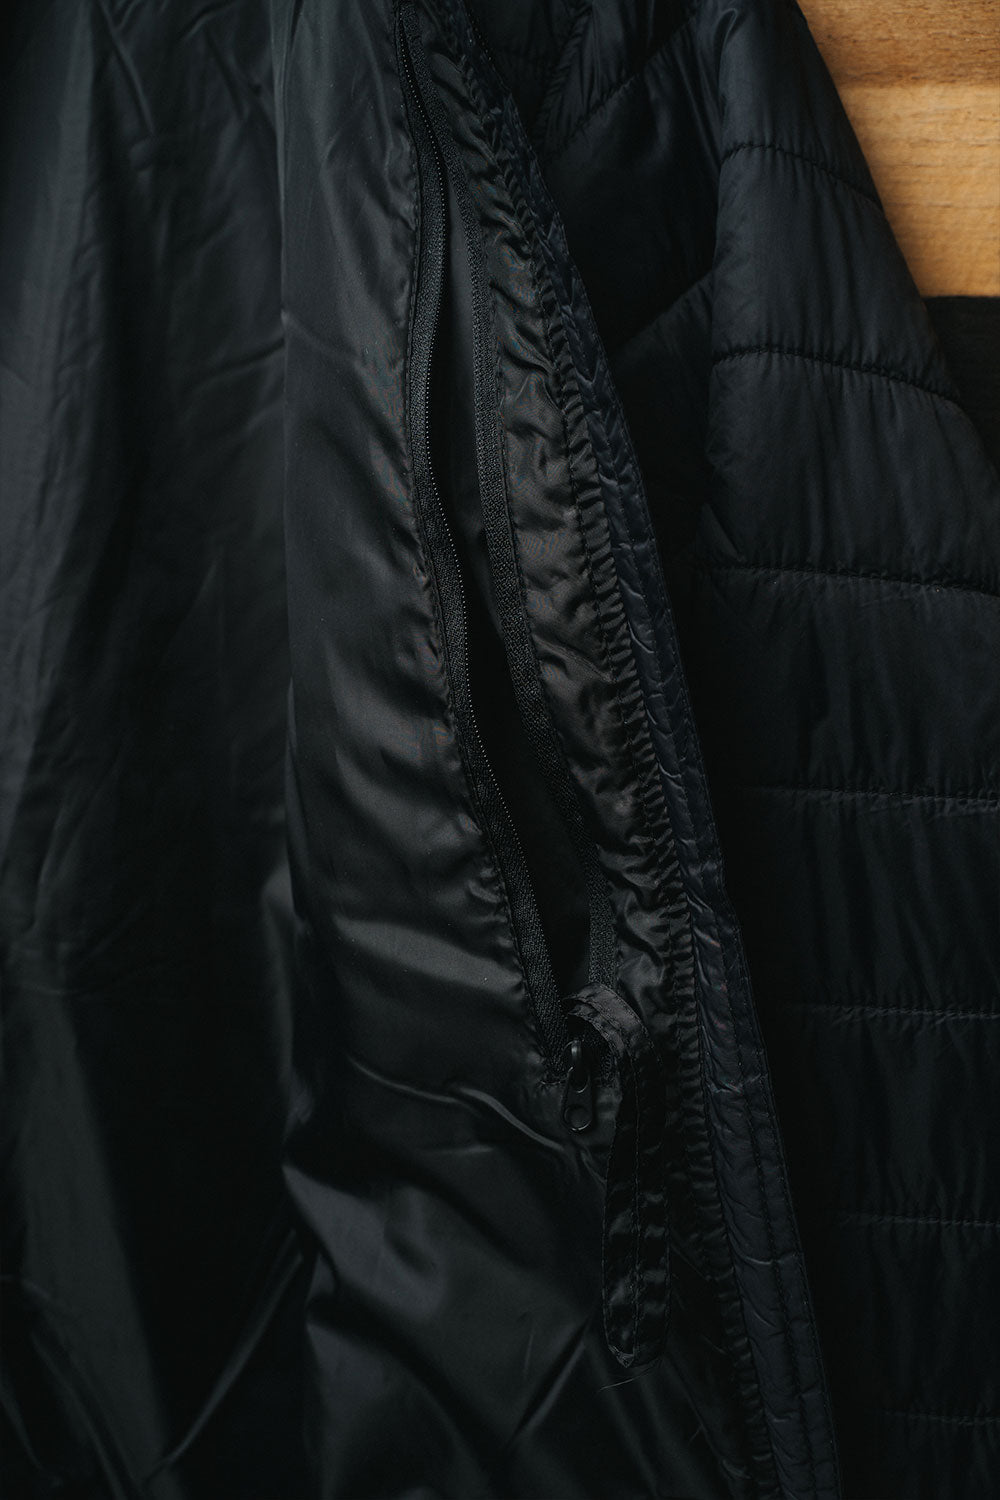 Women's Puffer Jacket - Nine Line Apparel